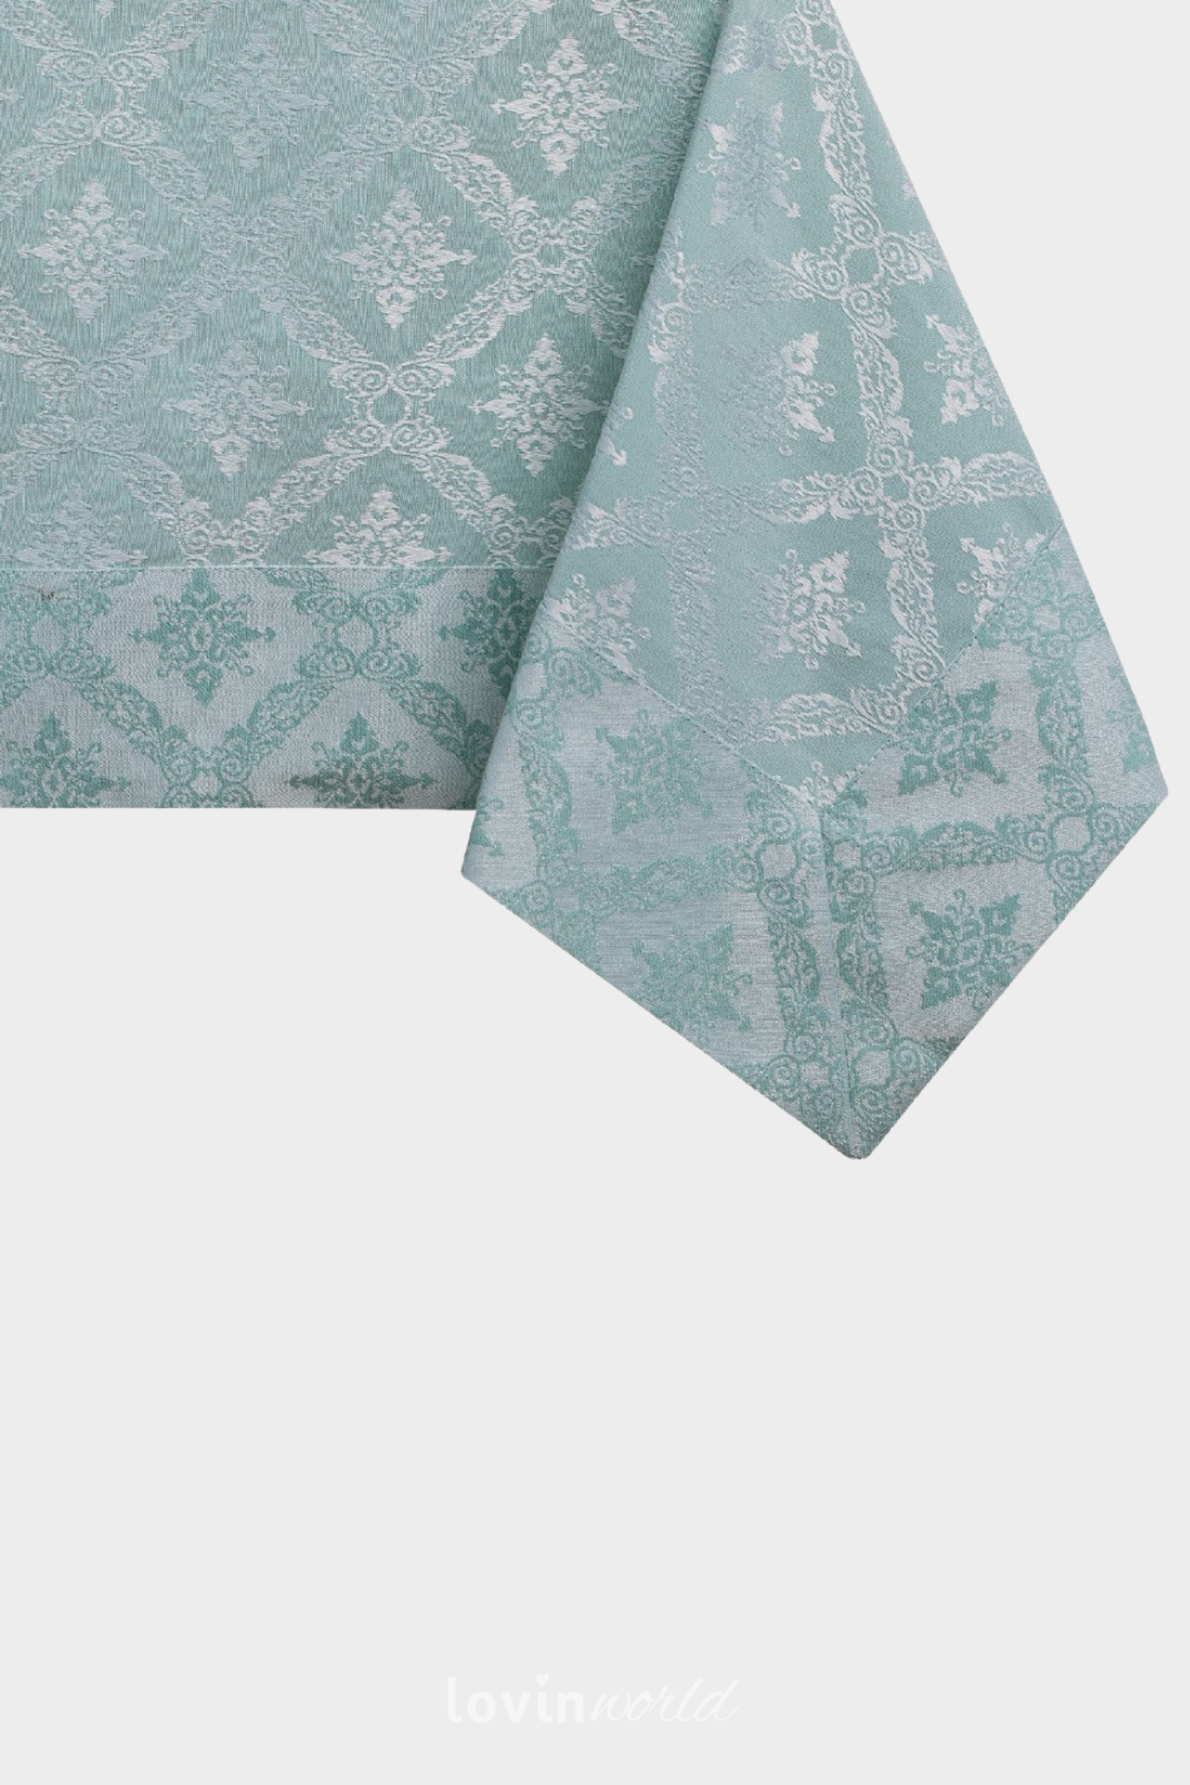 Tovaglia Maya in cotone con stampa, colore menta-1